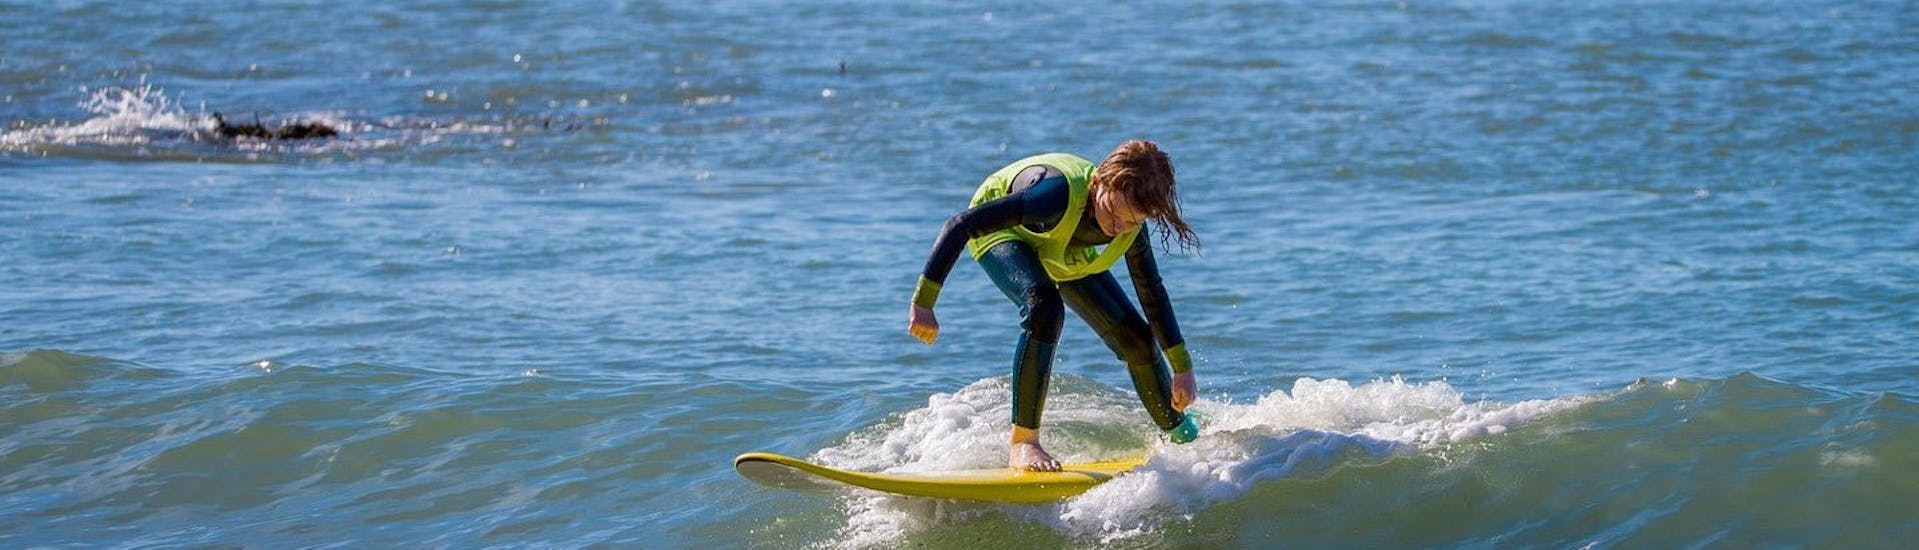 Lezioni private di surf a Ericeira da 12 anni per tutti i livelli.